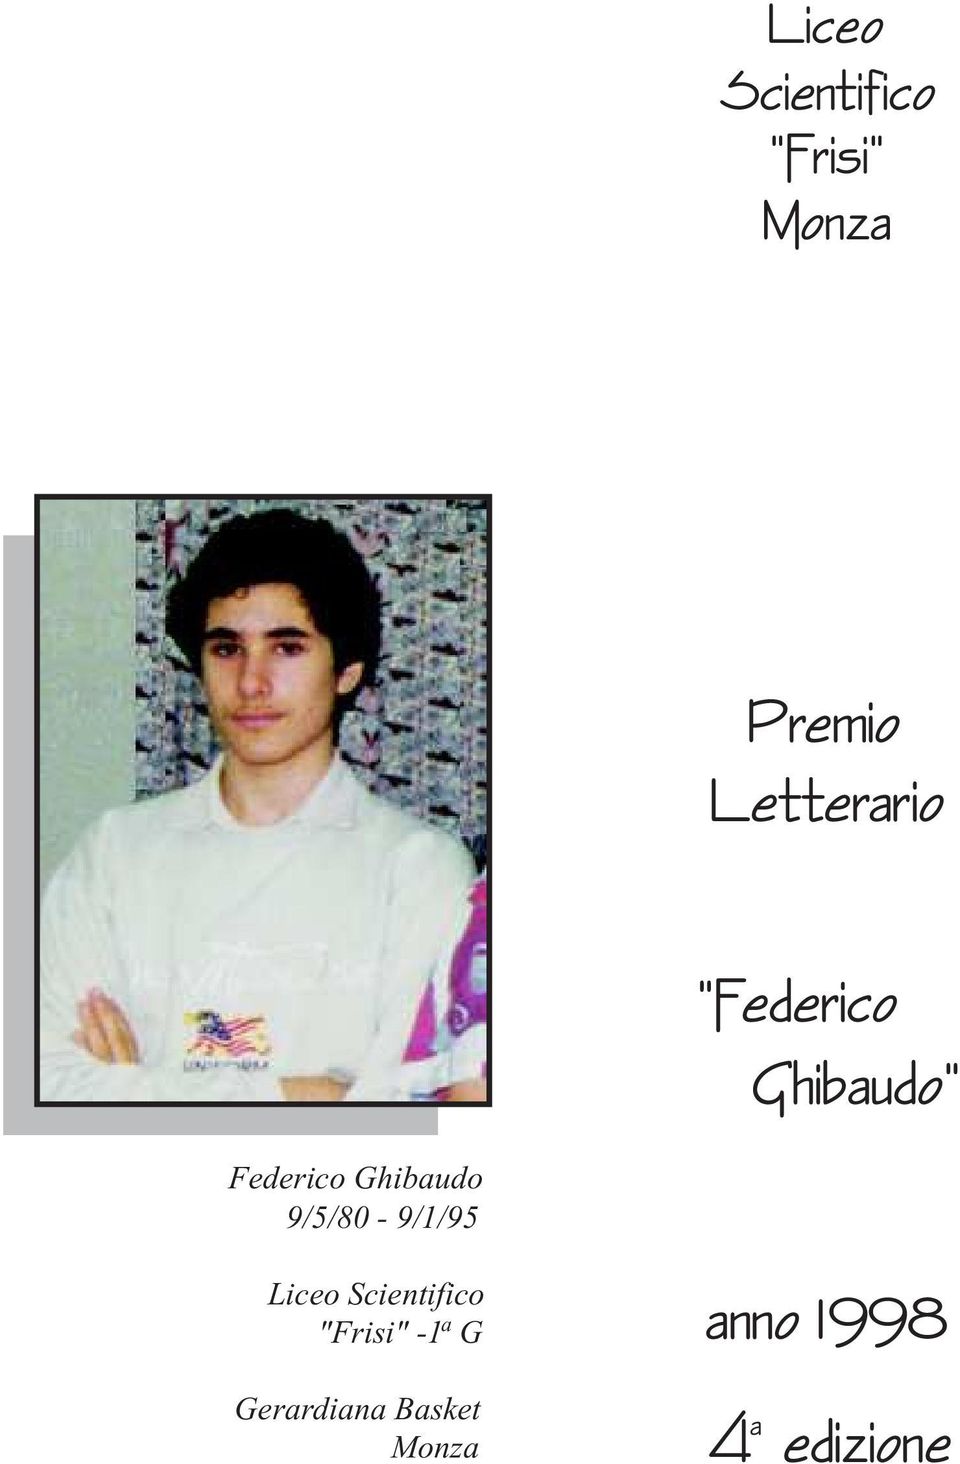 Ghibaudo 9/5/80-9/1/95 Liceo Scientifico